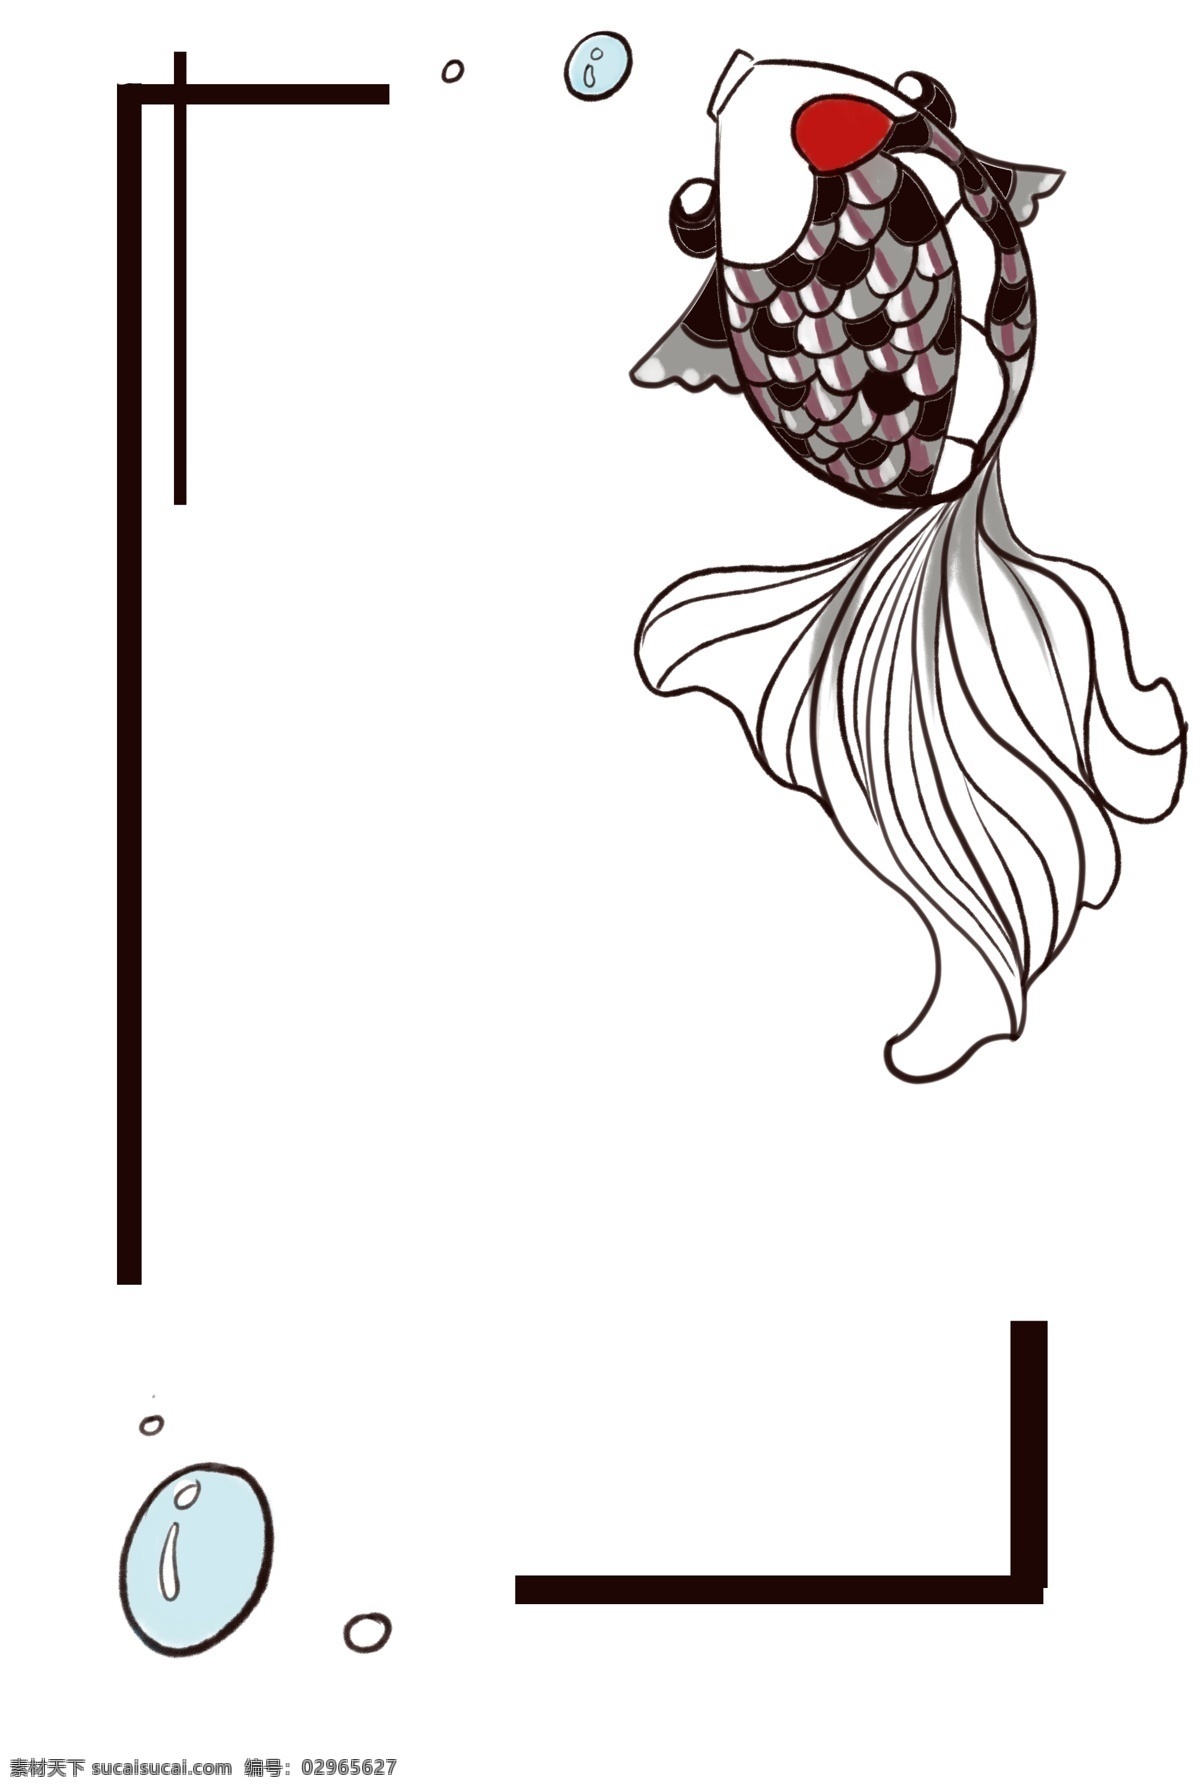 中国 风 手绘 锦鲤 边框 矢量图 中国风 古典风格 国风 装饰 古典边框 卡通 金鱼 吐泡泡